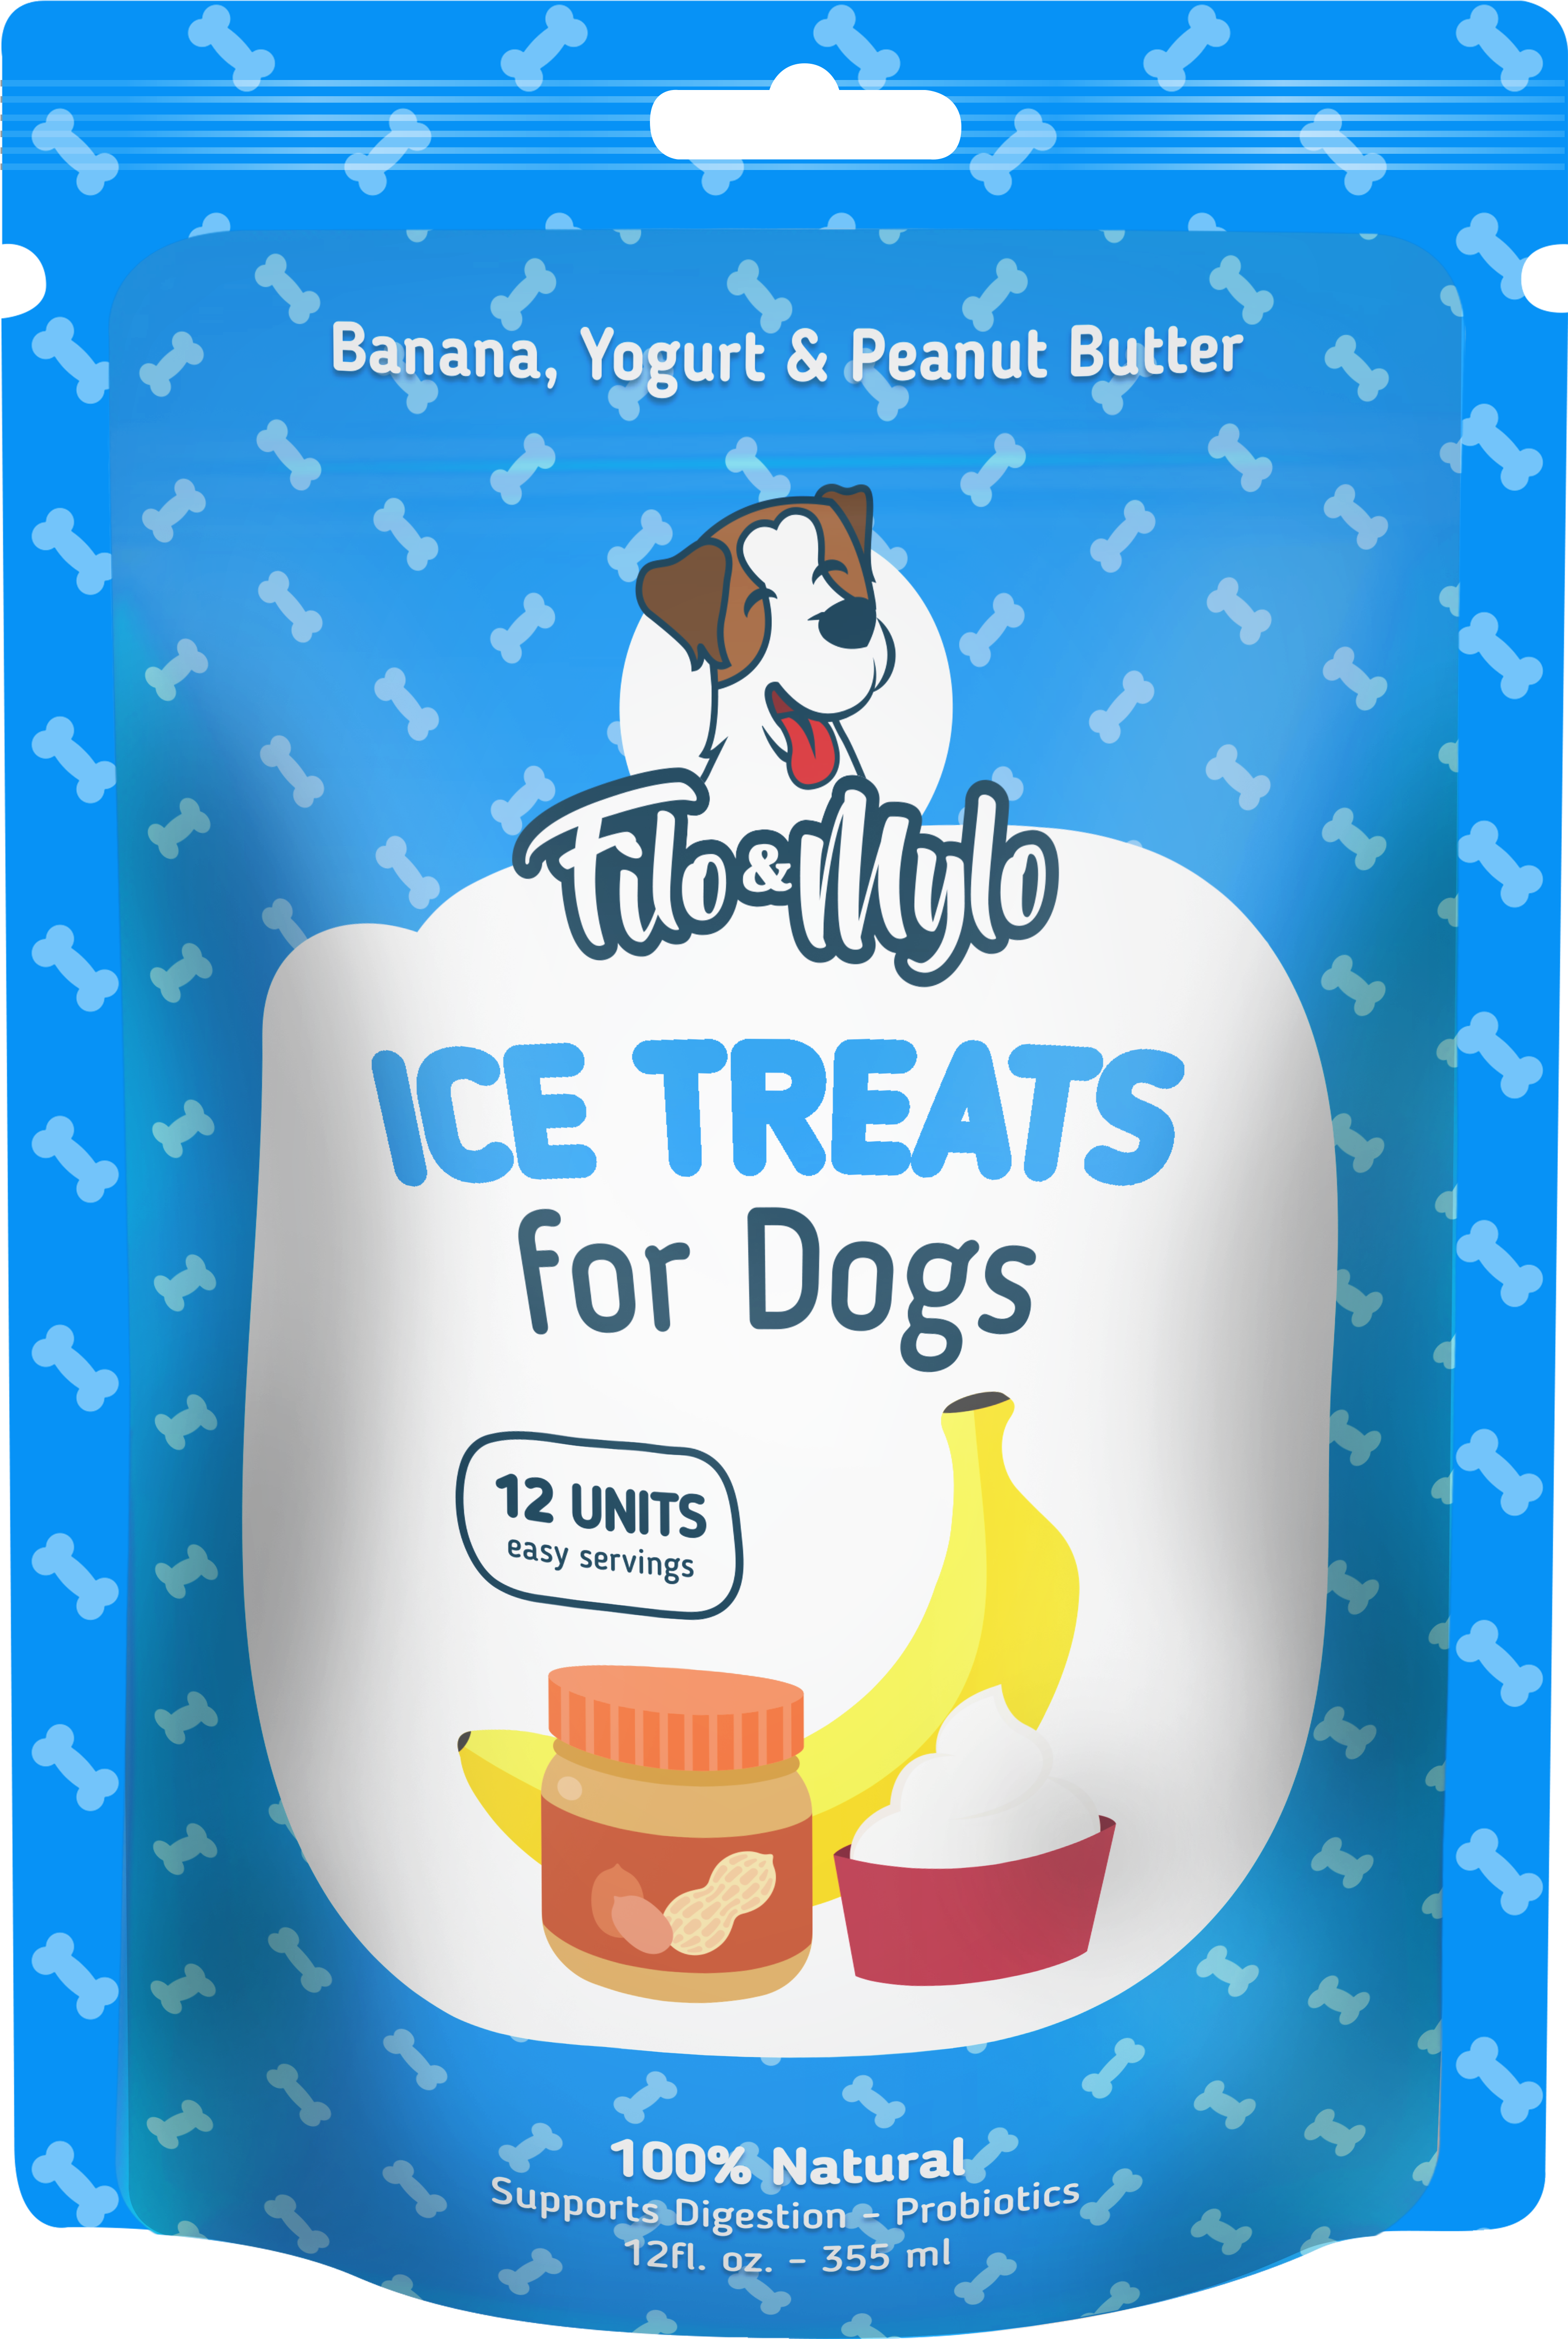 Banana Ice Treats For Dogs - 4 Packs Filo & Mylo All Natural Banana Ice Cream (6000x5100)